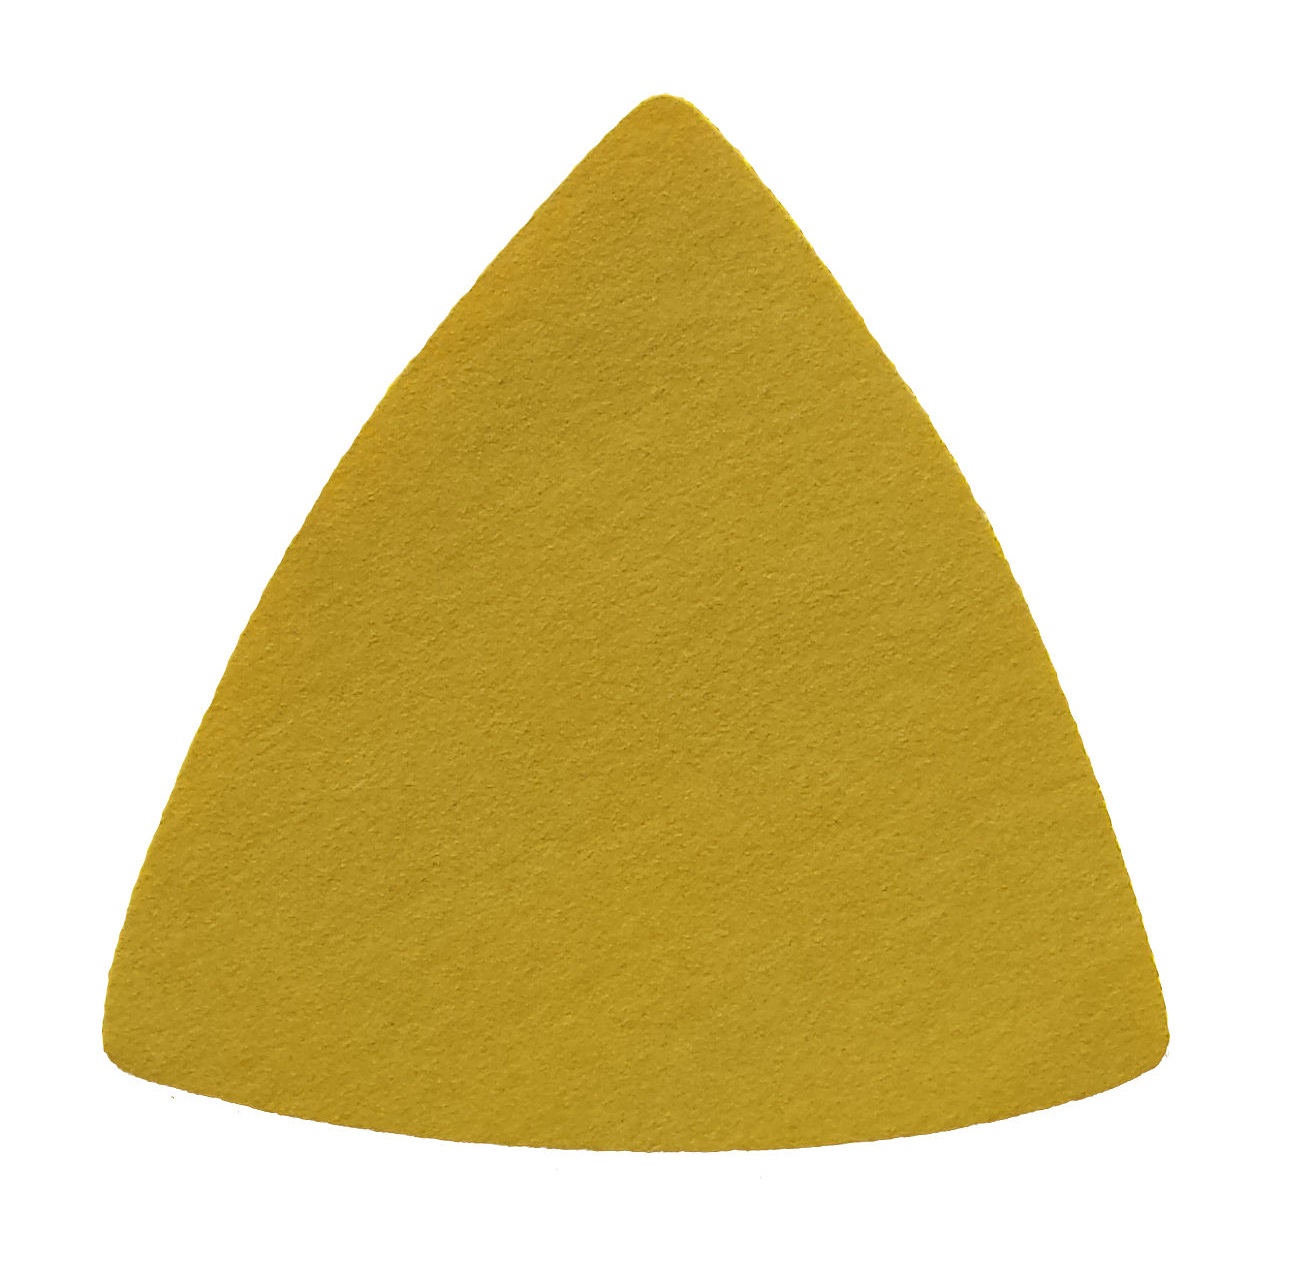 Triunghiuri abrazive - Triunghi abraziv Velcro 255P 79 0G P800, oldindustry.ro